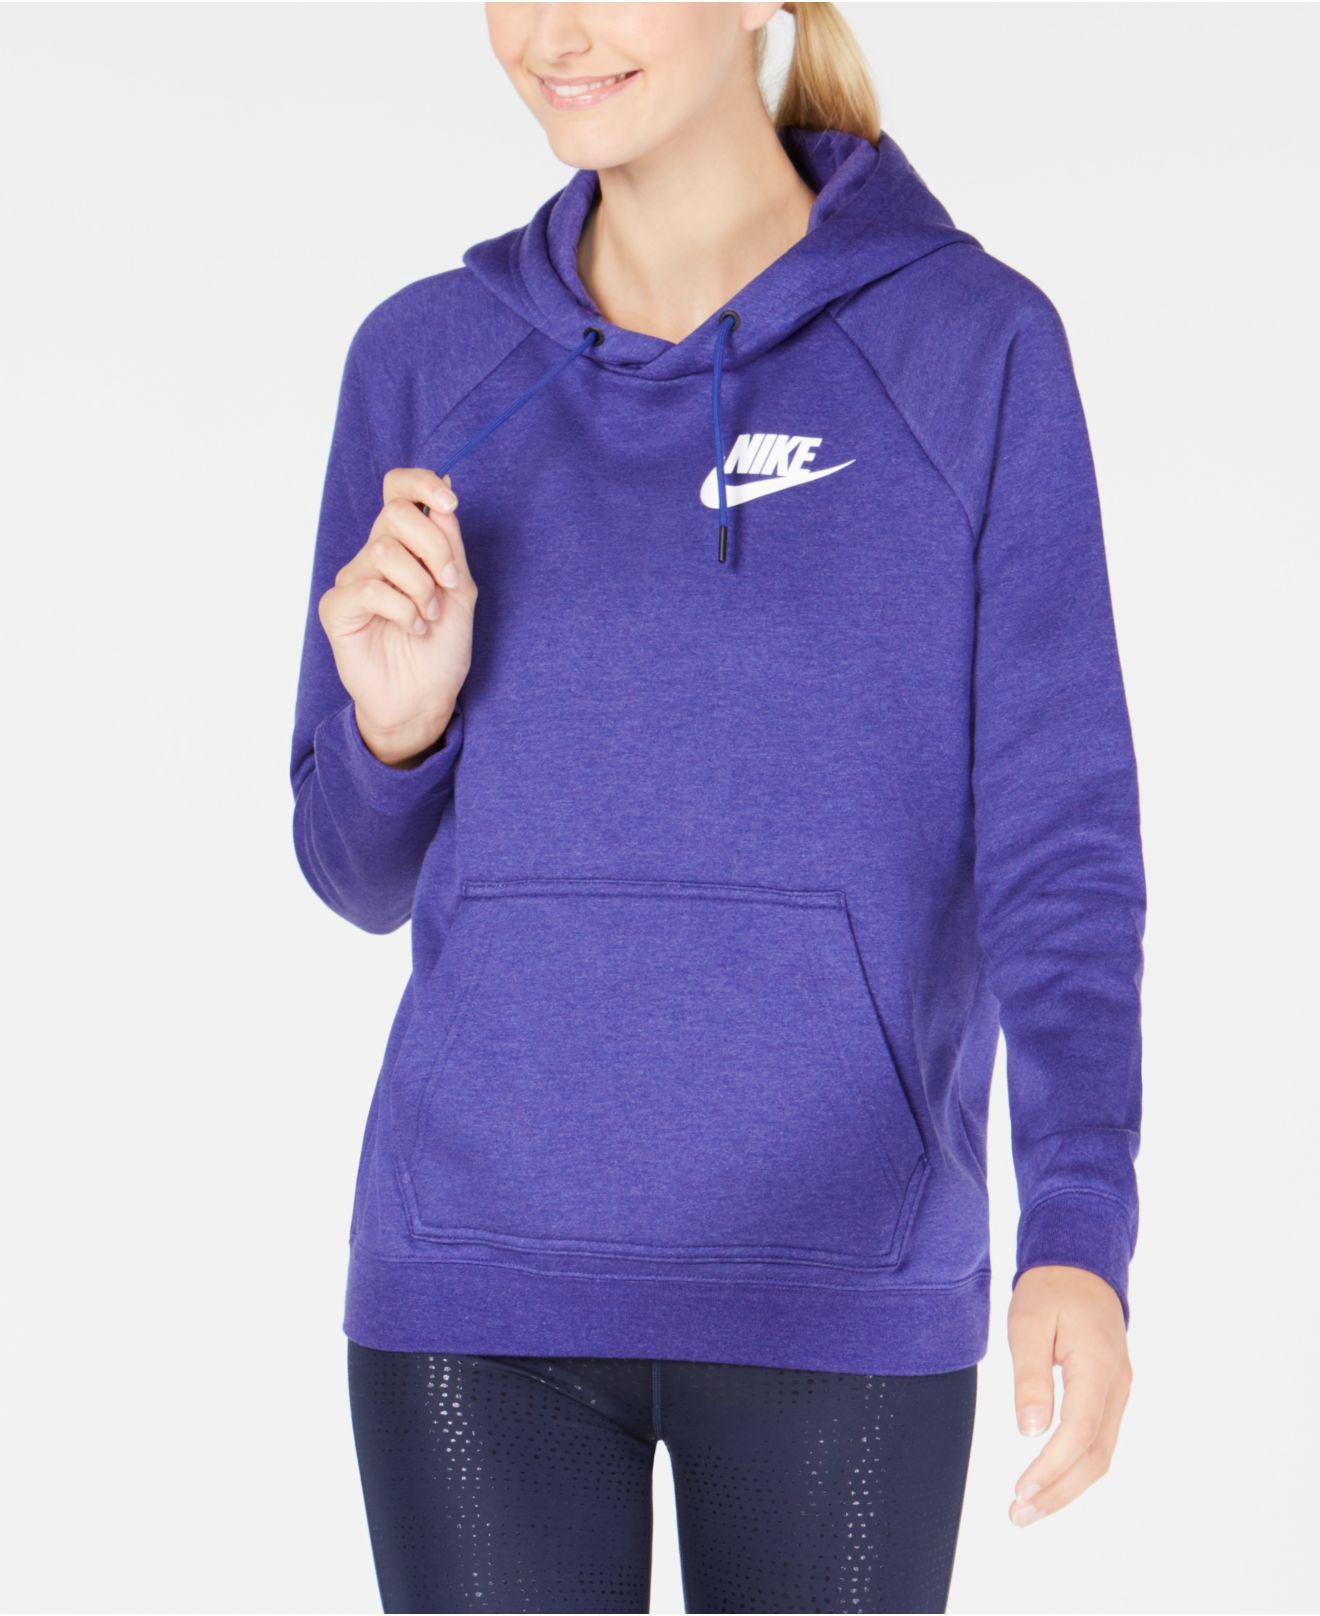 nike lavender hoodie women's